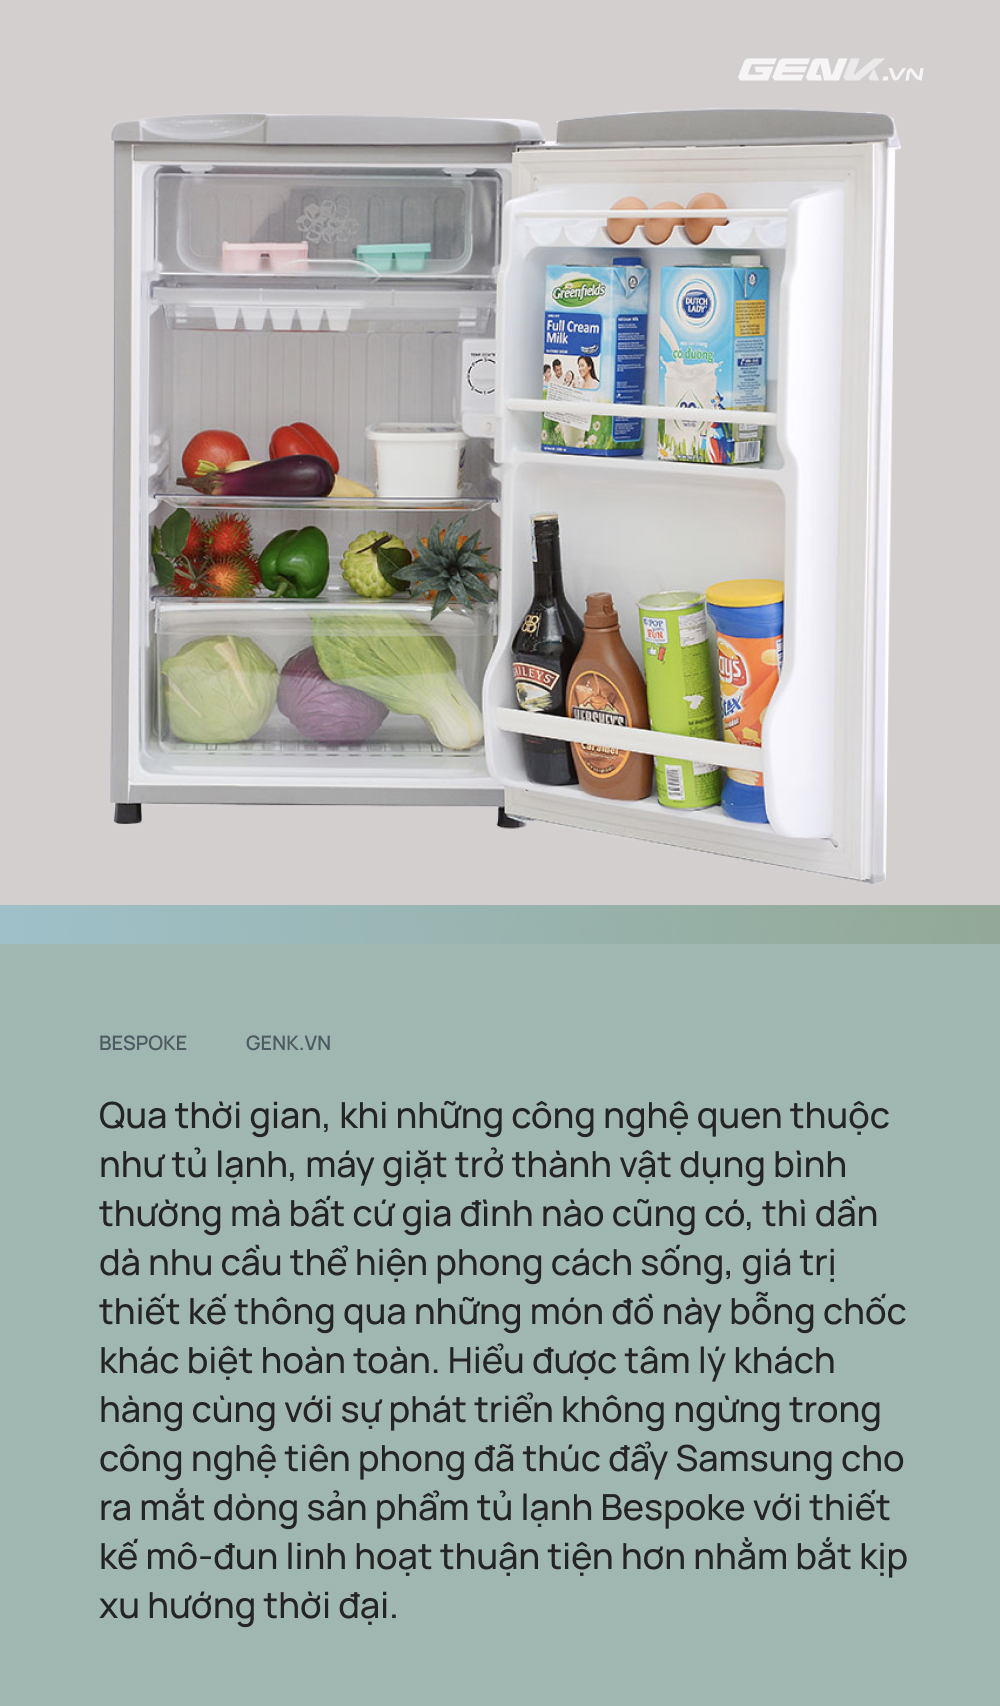 “Ngày xưa chỉ là món đồ gia dụng, ngày nay định hình phong cách sống”, chiếc tủ lạnh đã lên đời như thế nào? - Ảnh 2.